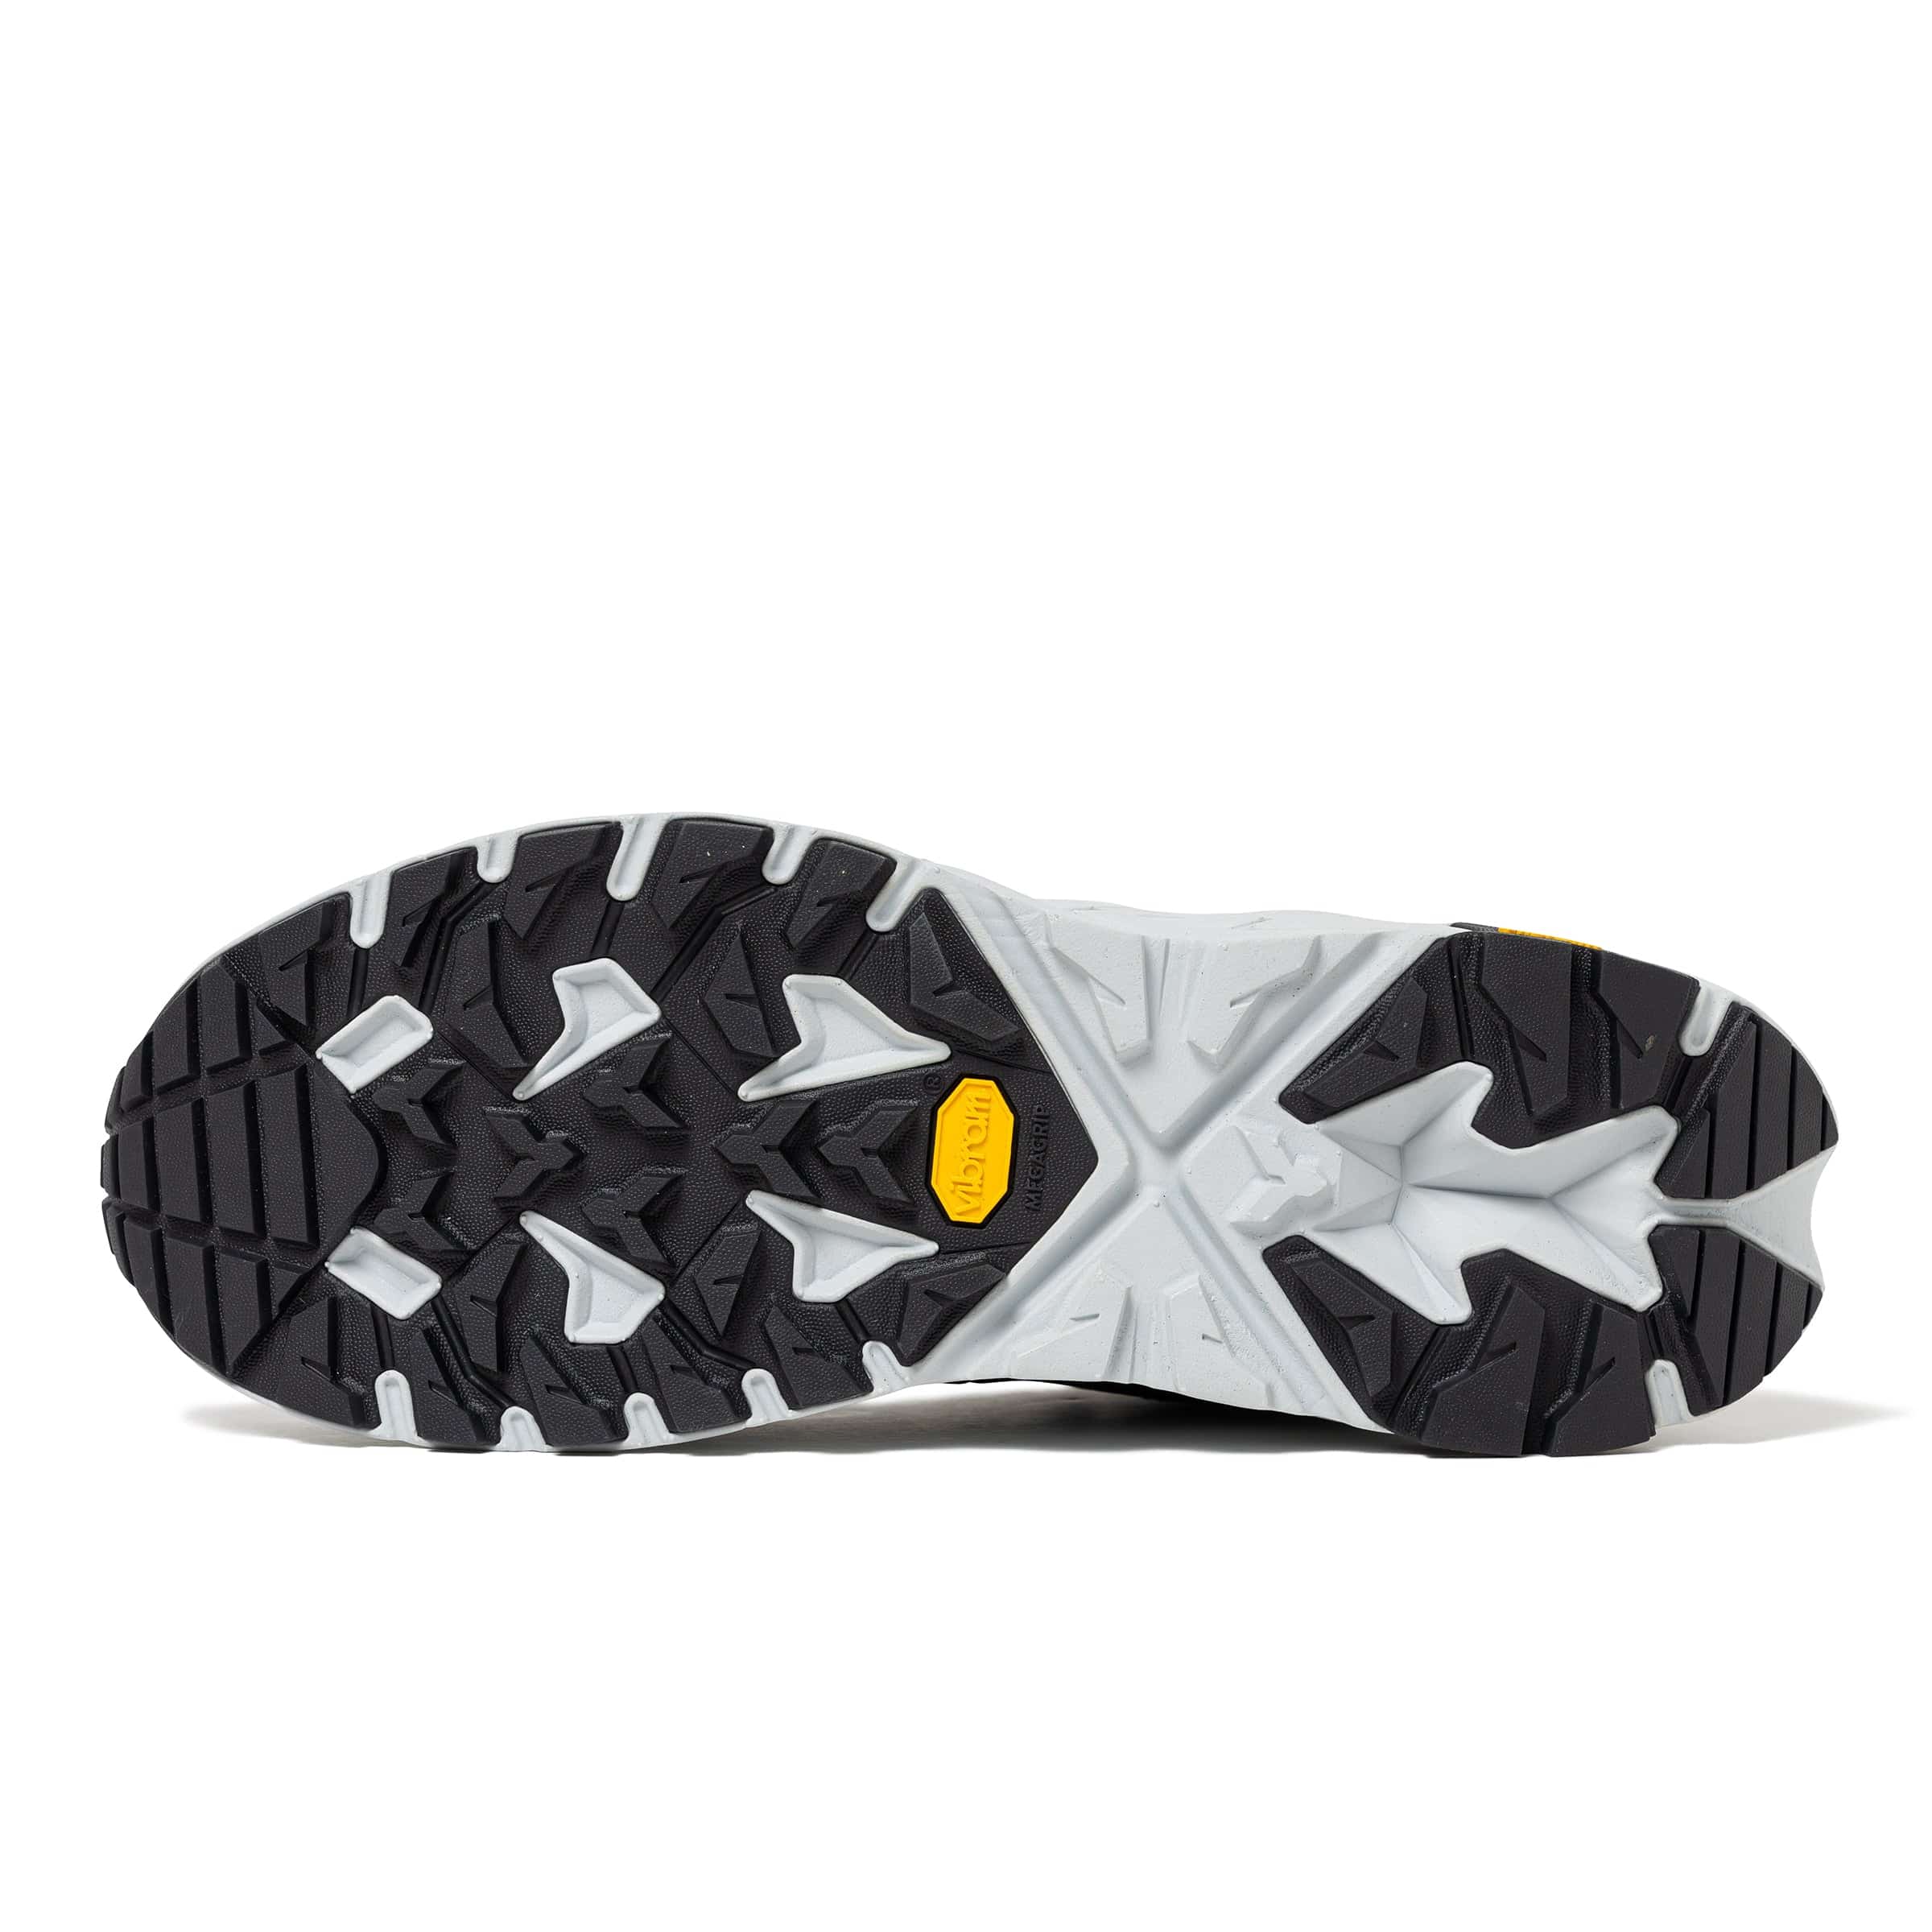 Hoka Anacapa Low GTX WTAPS Shoes in Jet Black/Glacier Grey